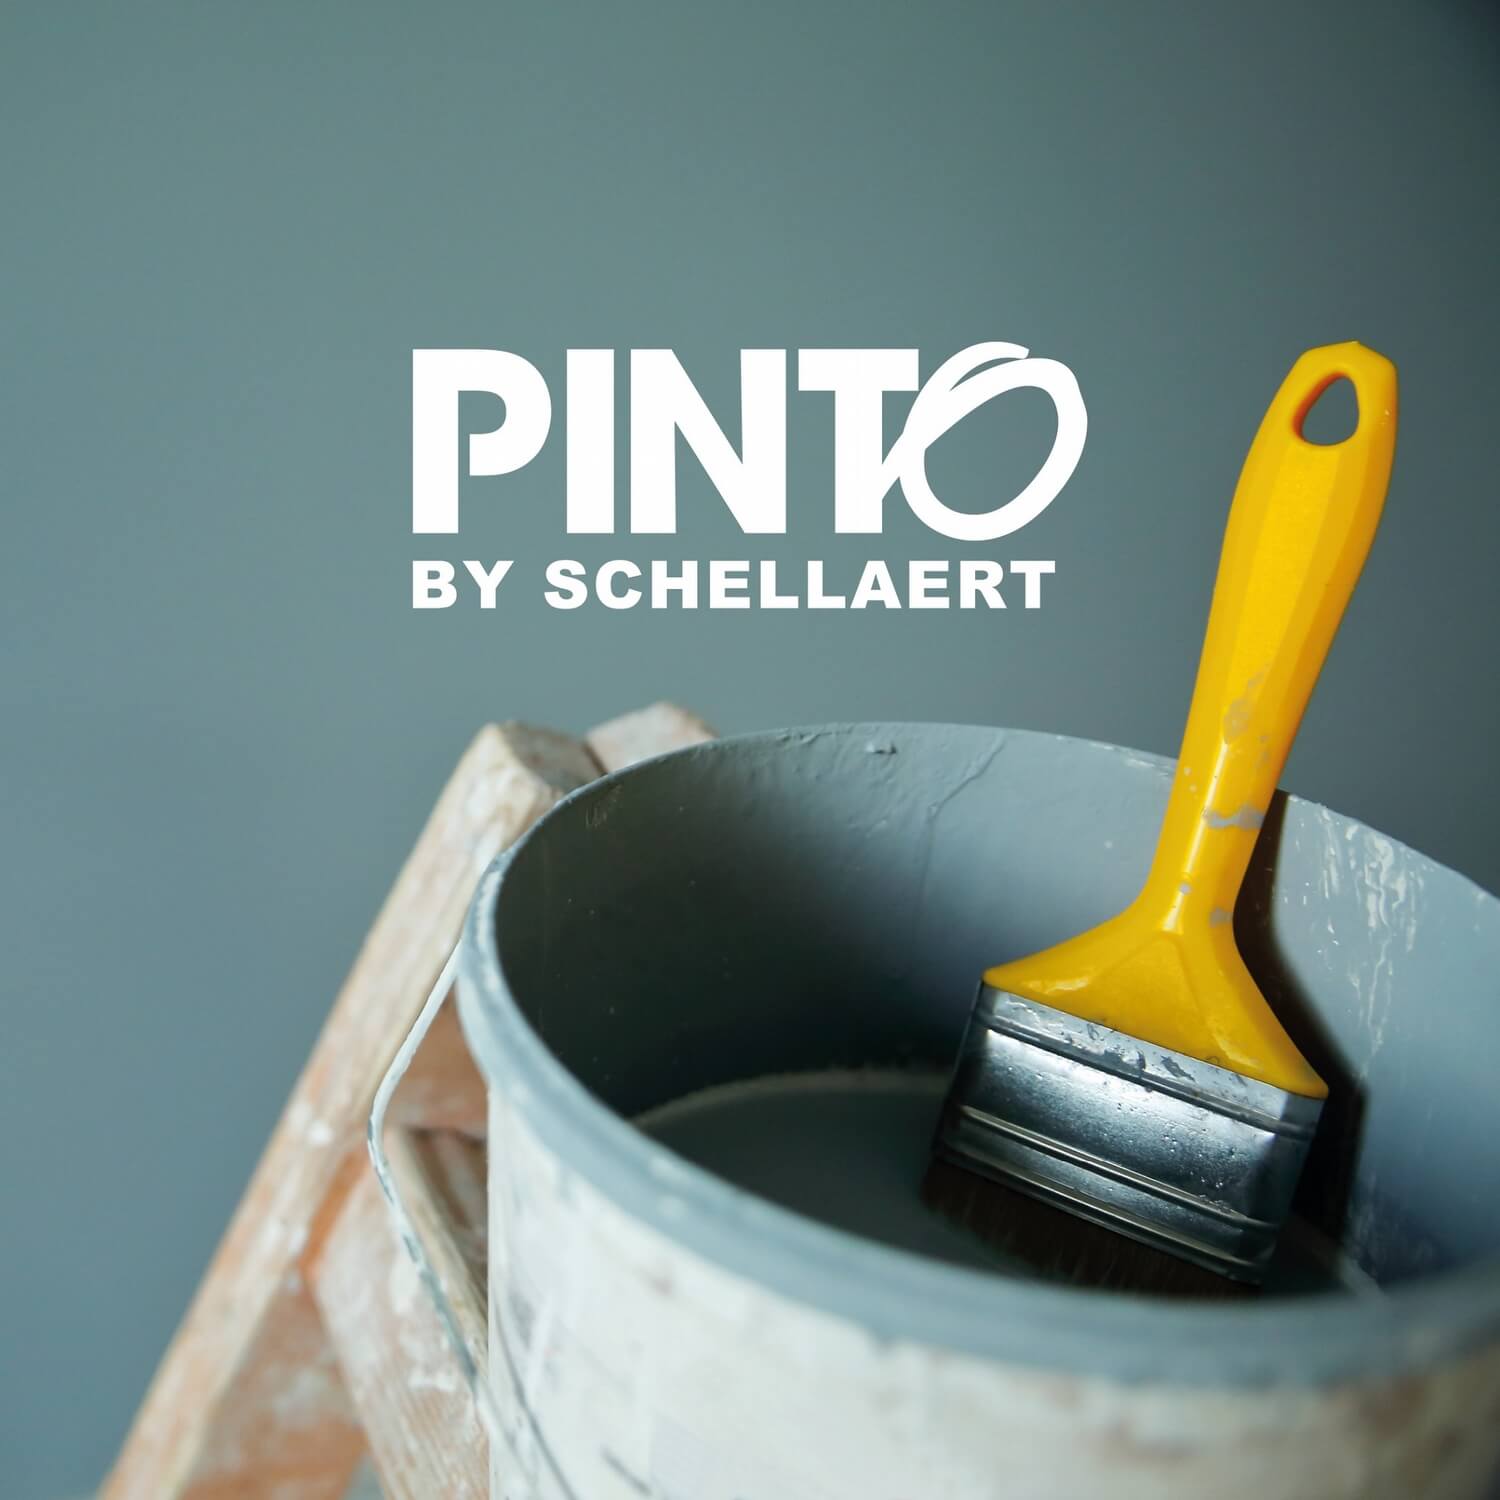 Pinto by Schellaert